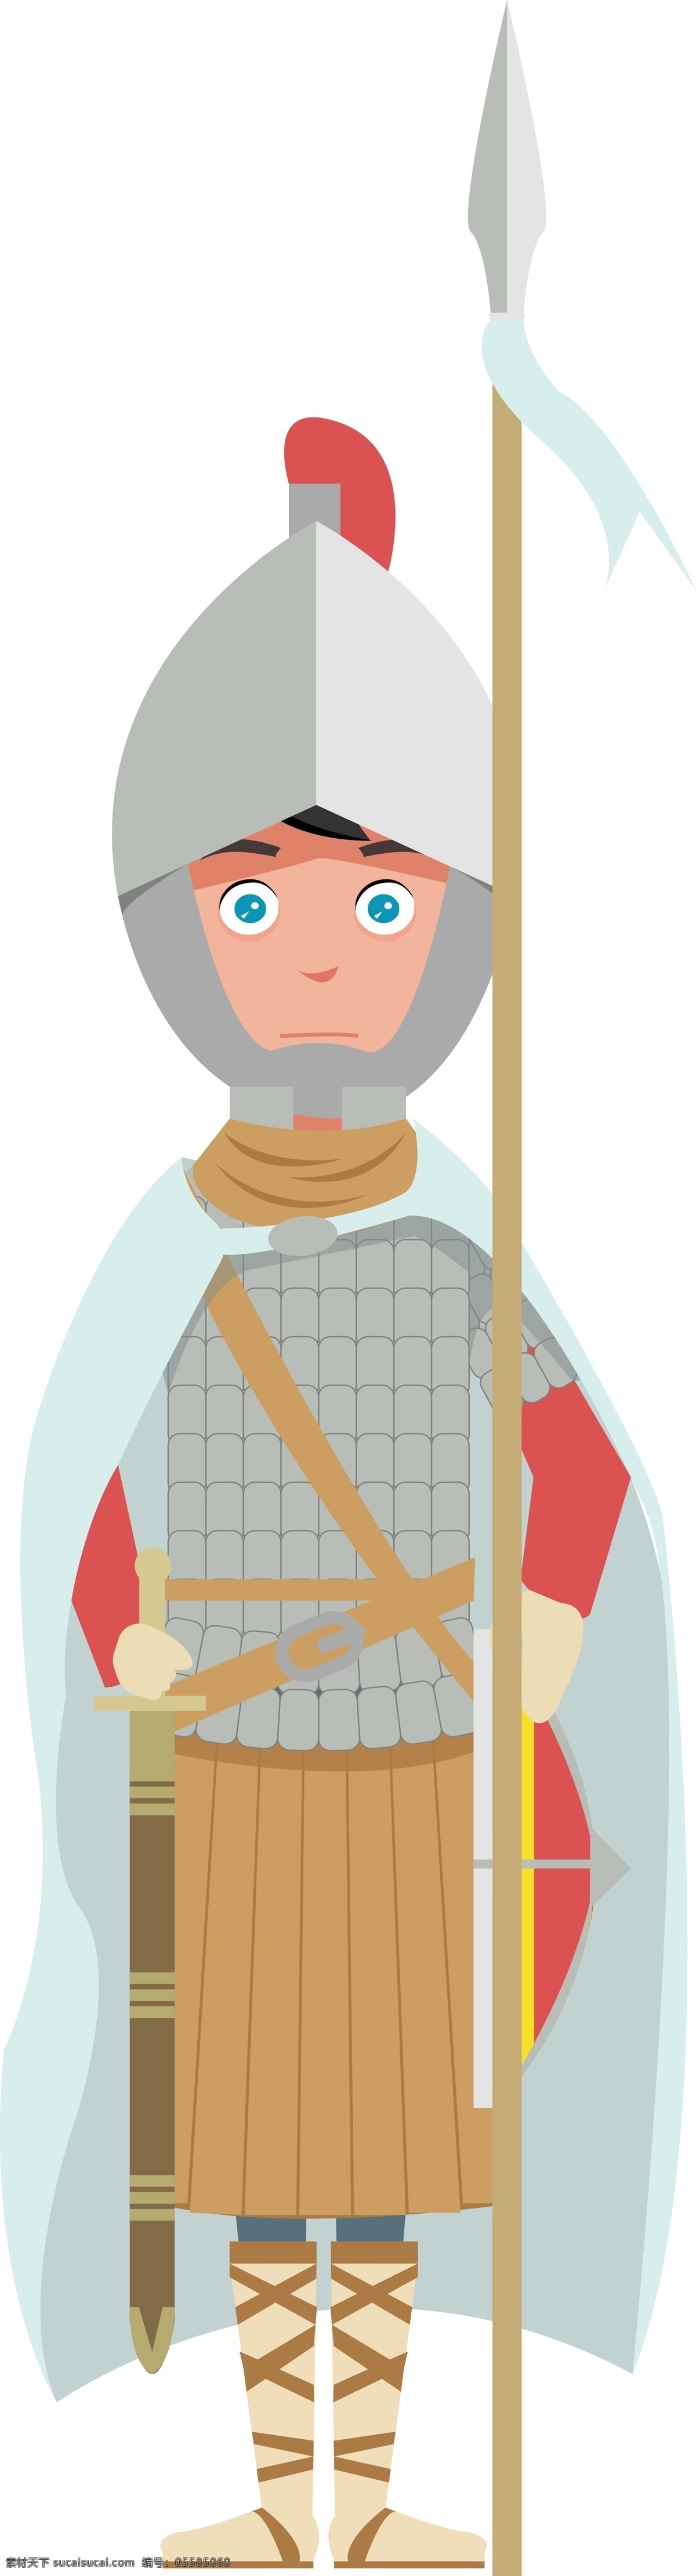 中世纪 欧洲 骑士 服装 盔甲 卡通 卡通人物 人物 矢量